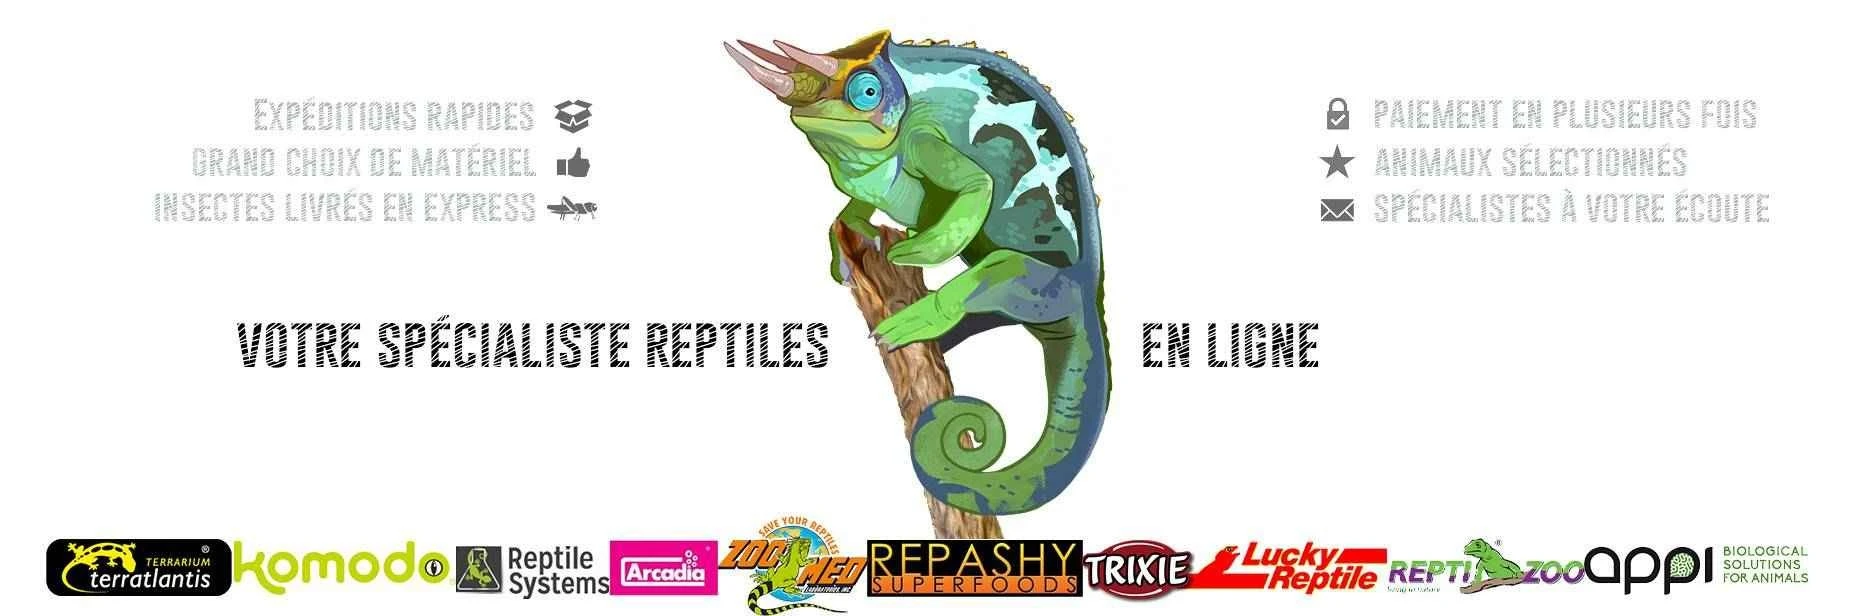 Votre spécialiste reptiles